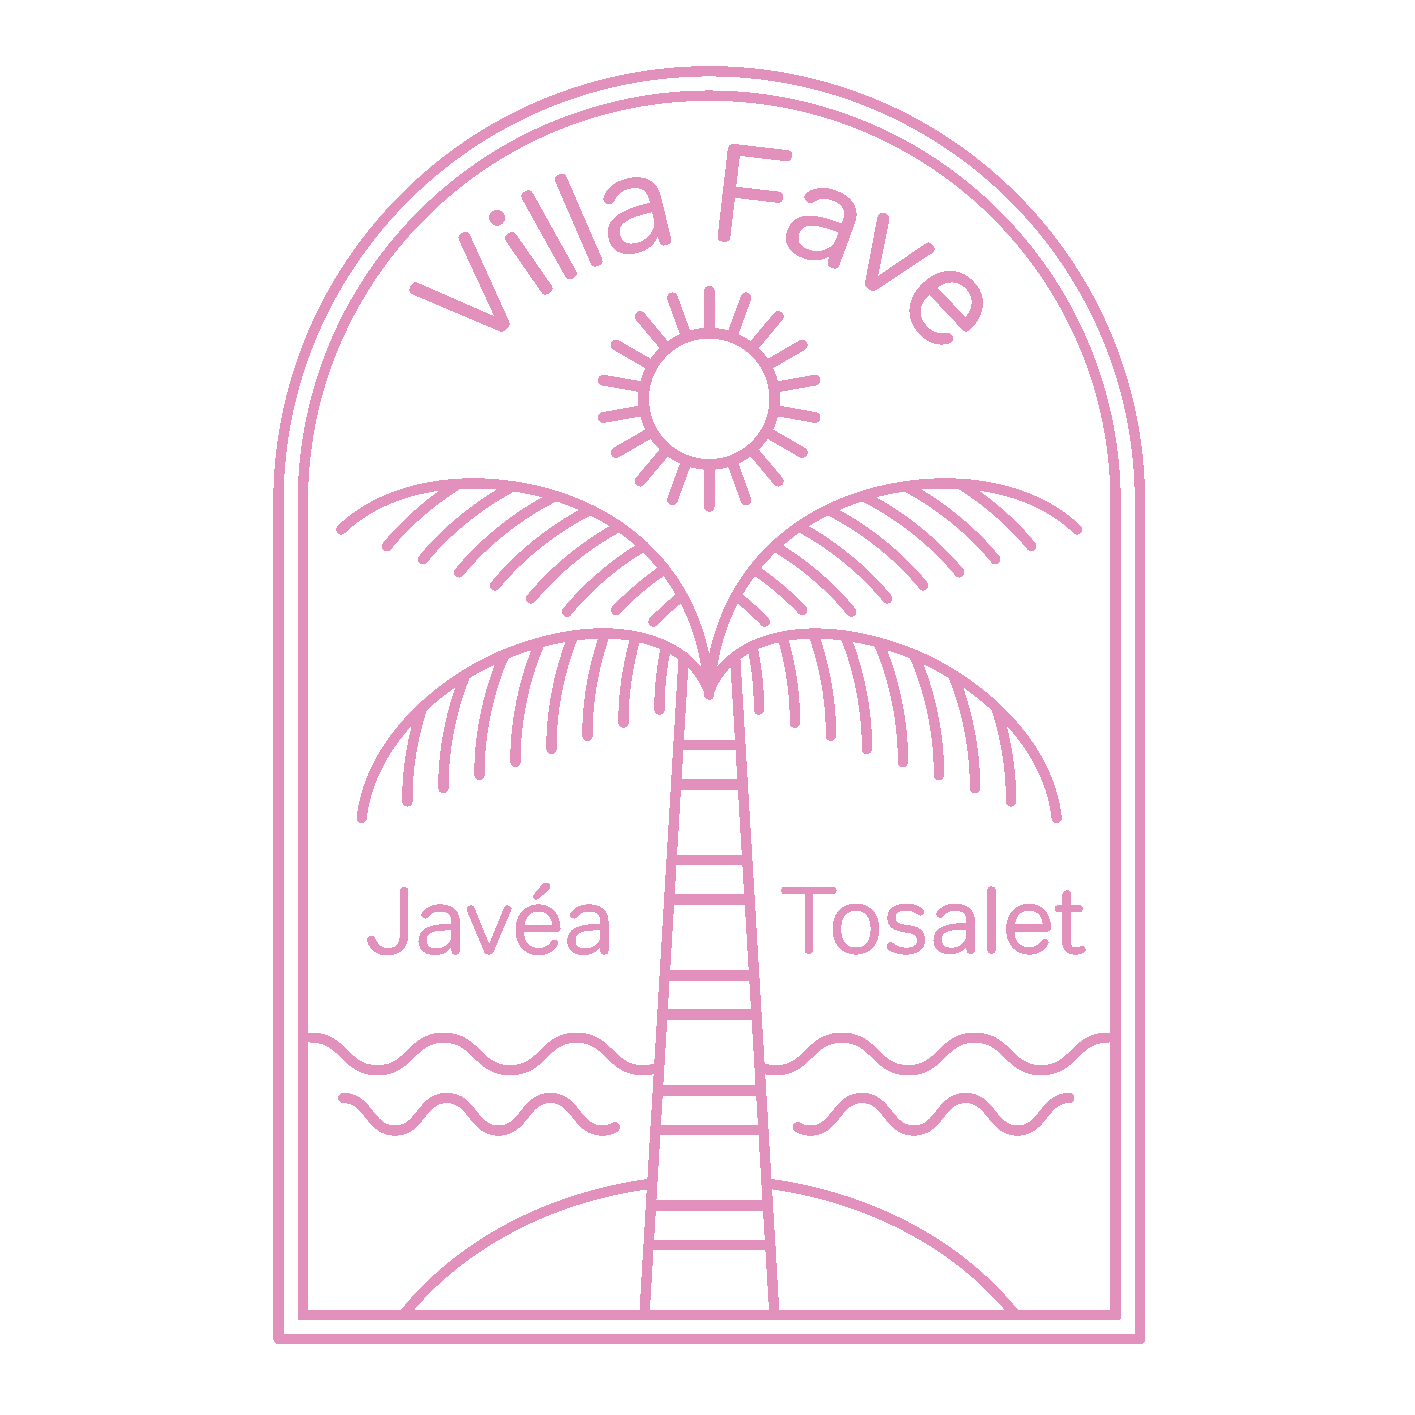 Een roze logo voor Villa Fave Javea